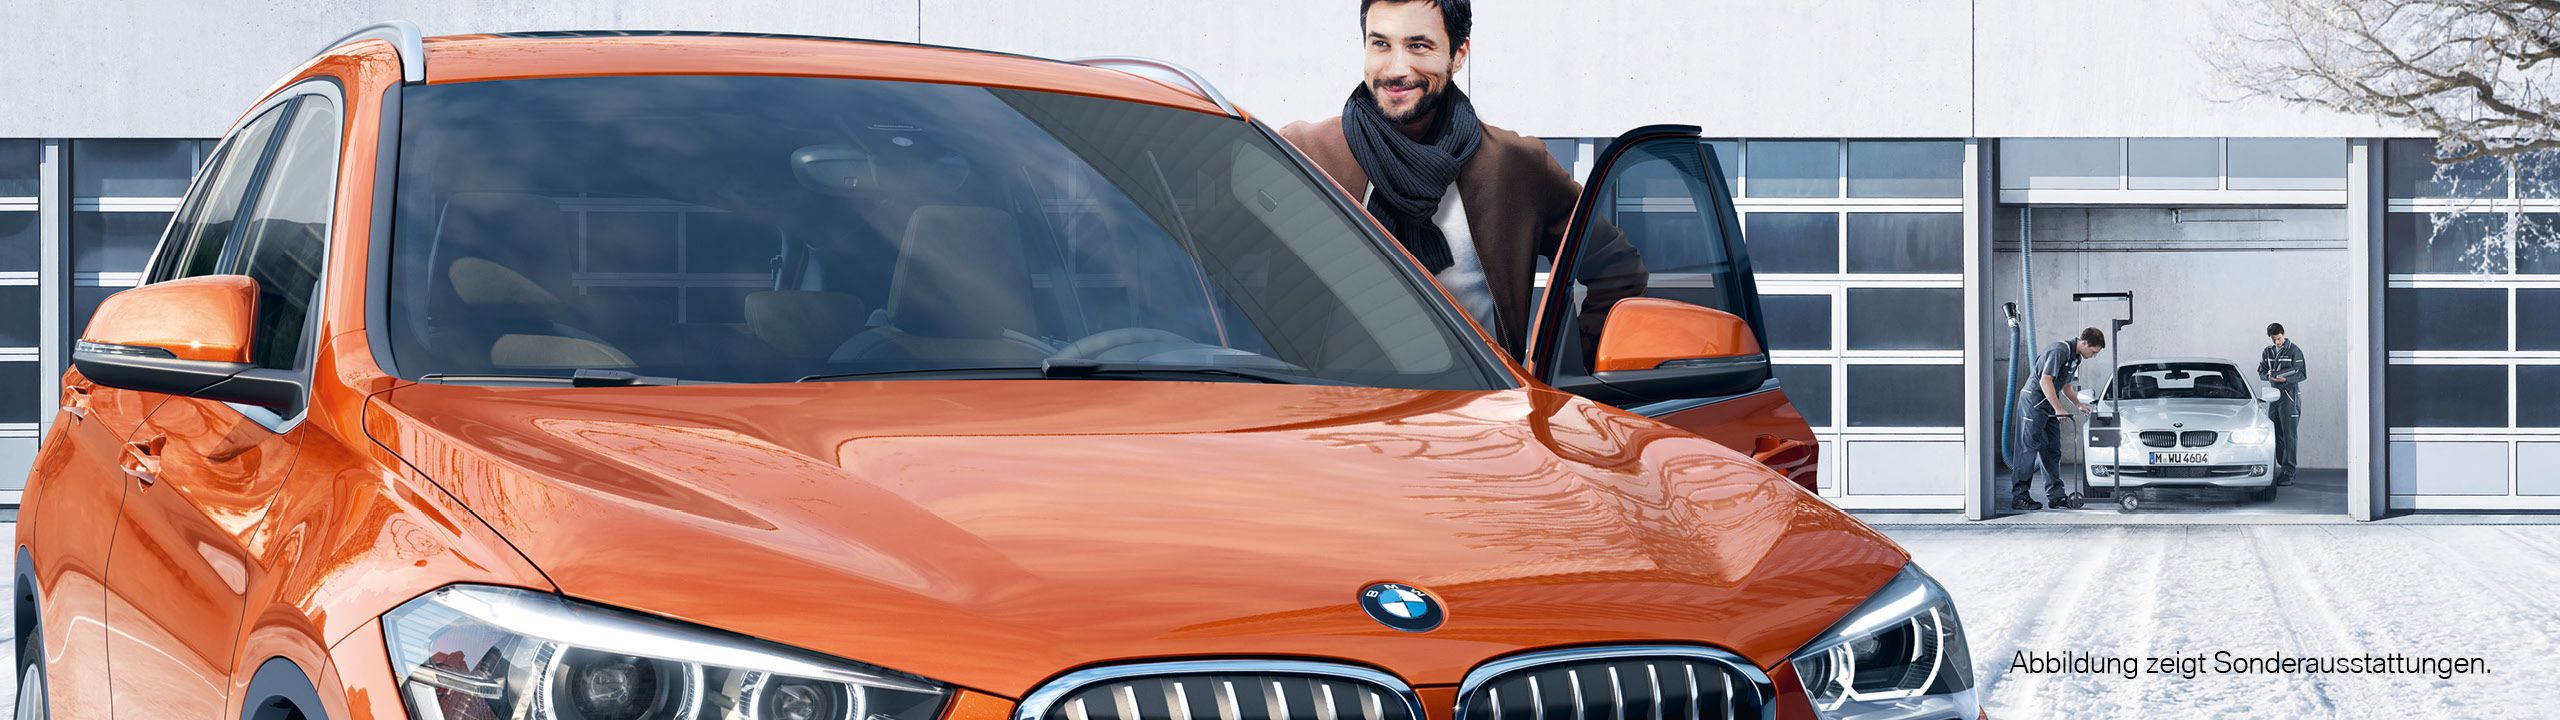 Mann steigt freudig in seinen orangenen BMW, Werkstatt in winterlicher Umgebung im Hintergrund